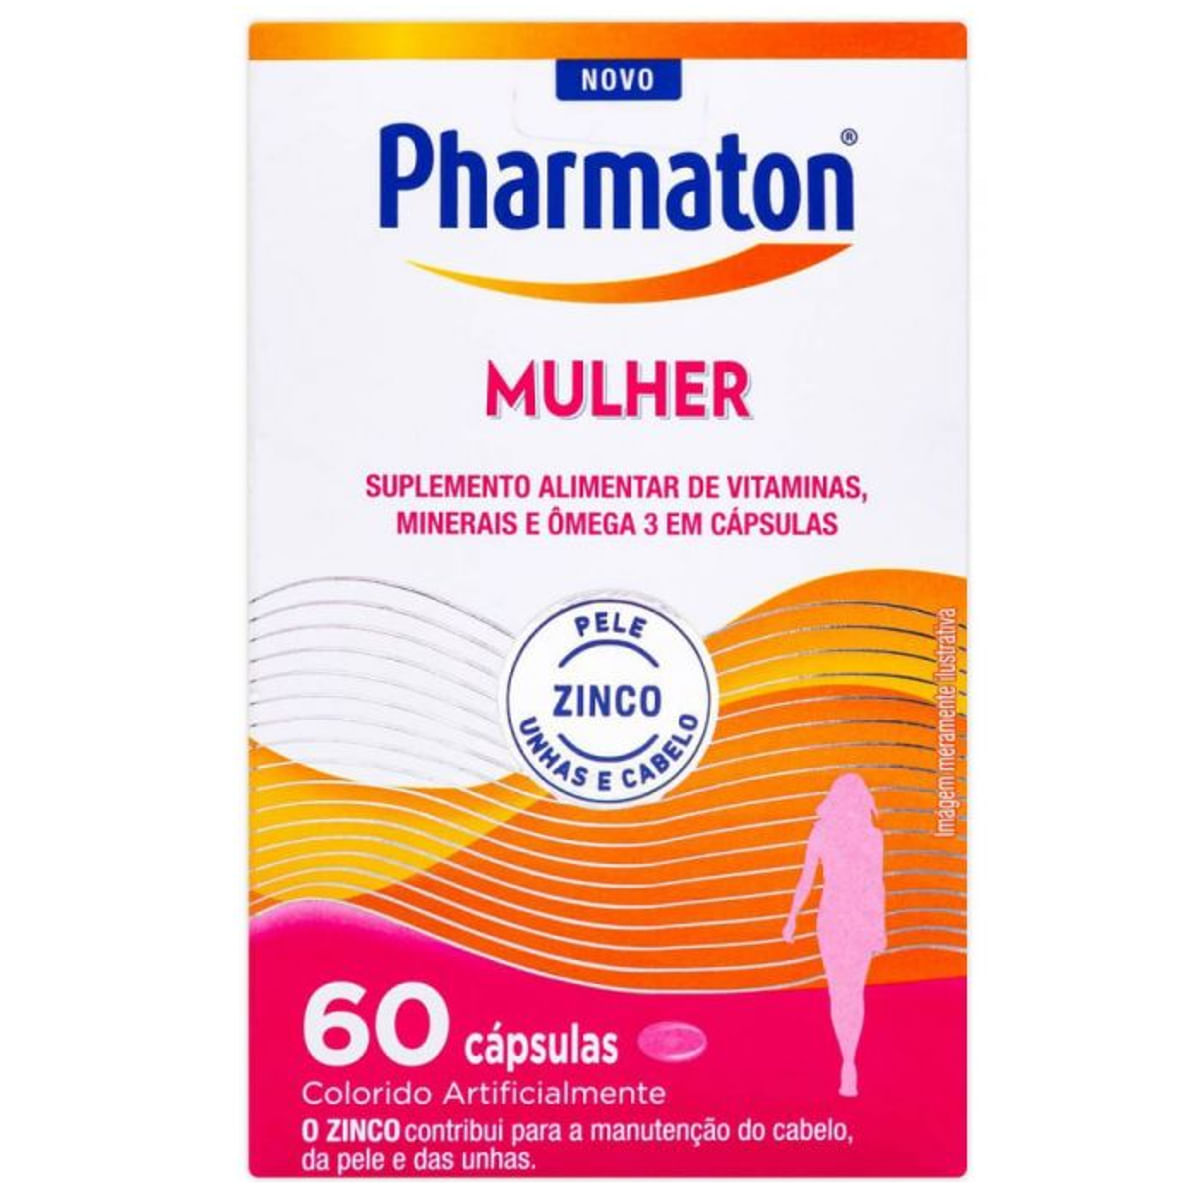 pharmaton-mulher-60-capsulas-1.jpg